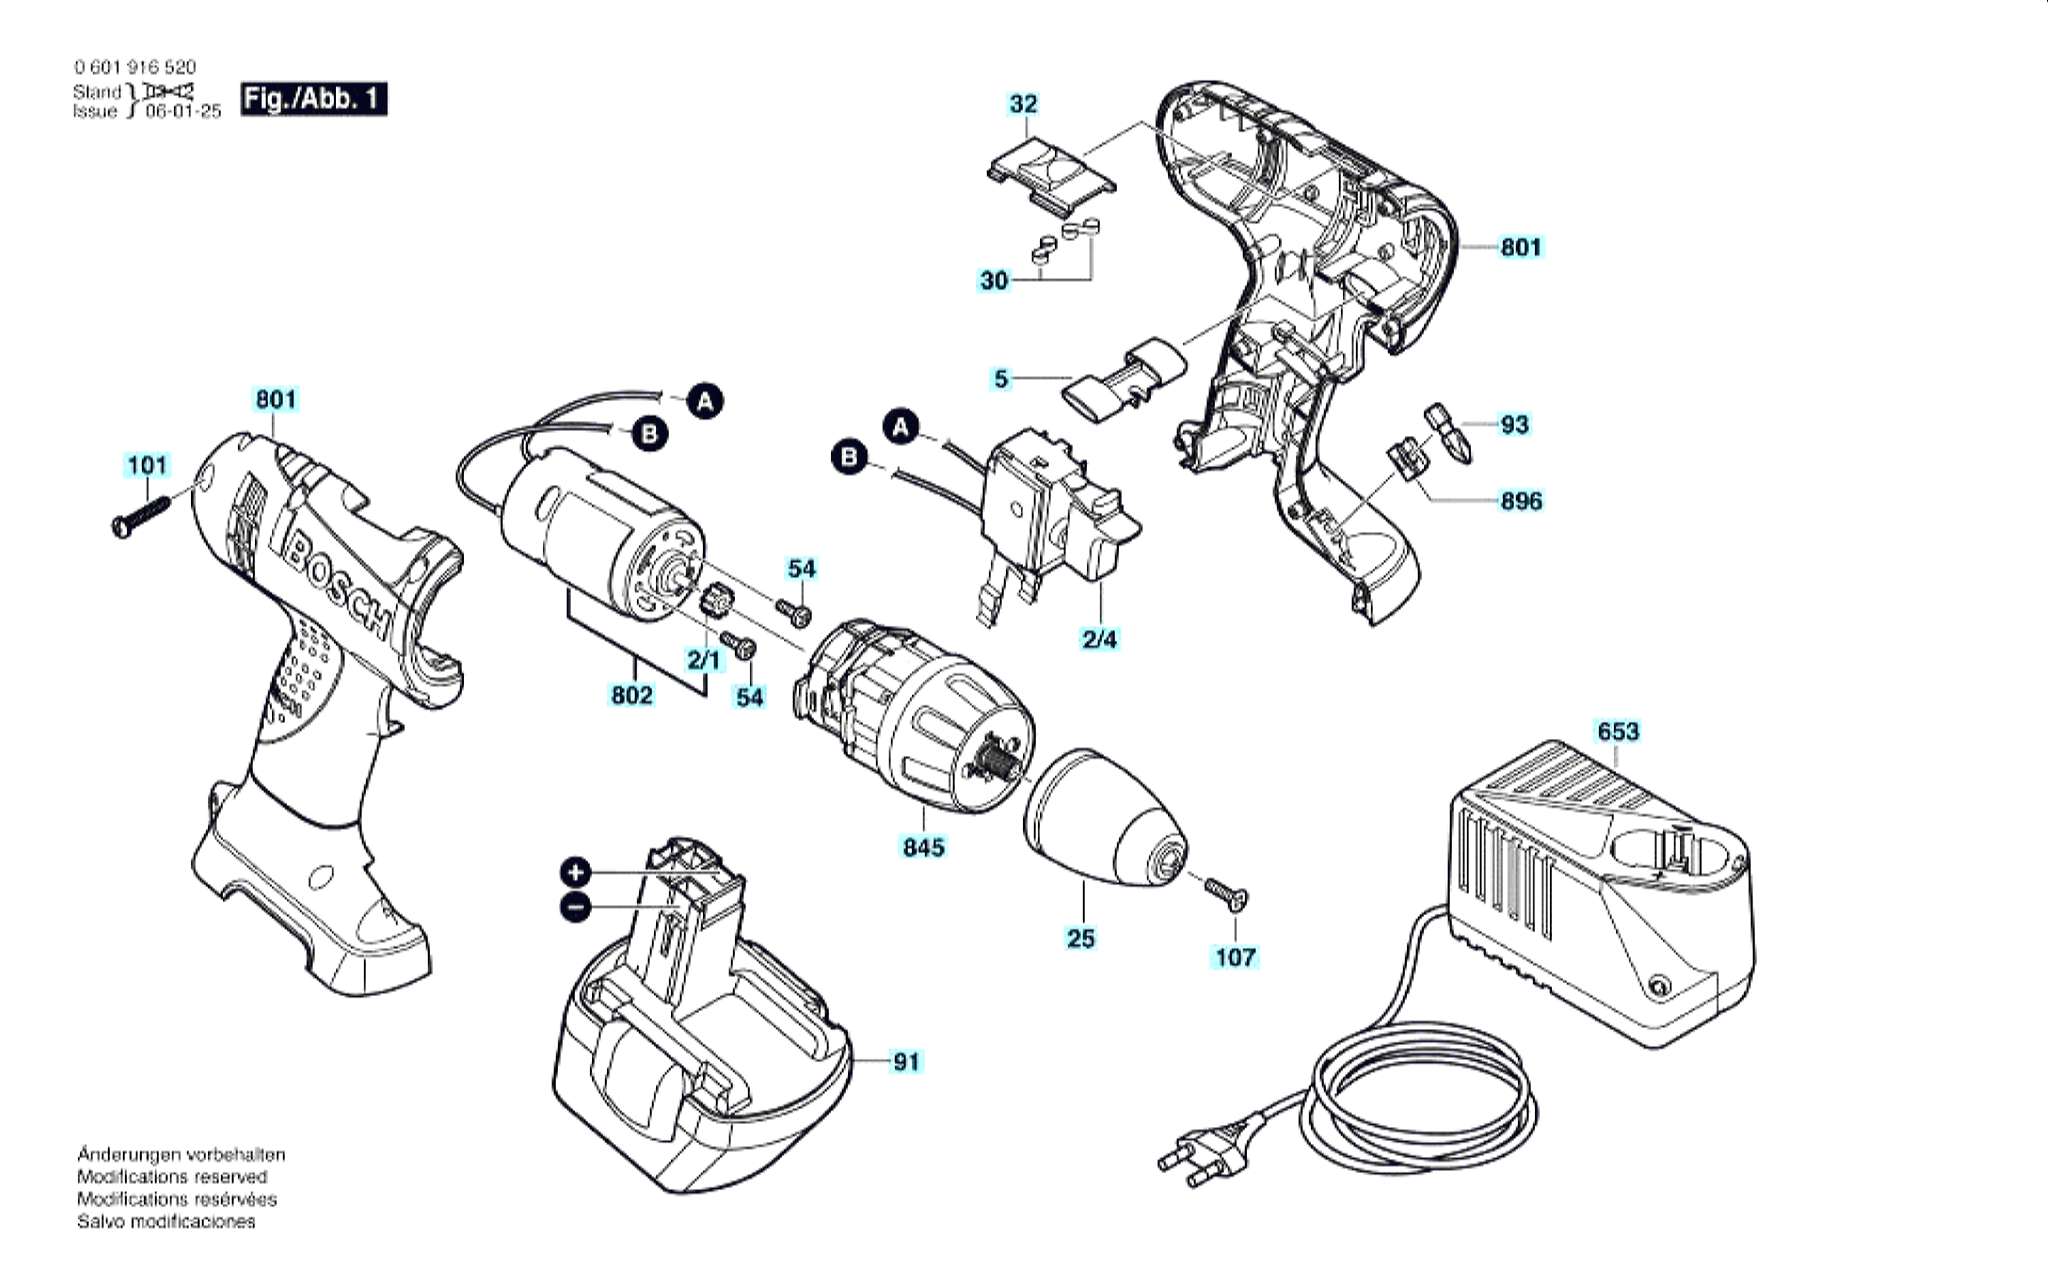 Запчасти, схема и деталировка Bosch GSR 12 V (ТИП 0601916530)